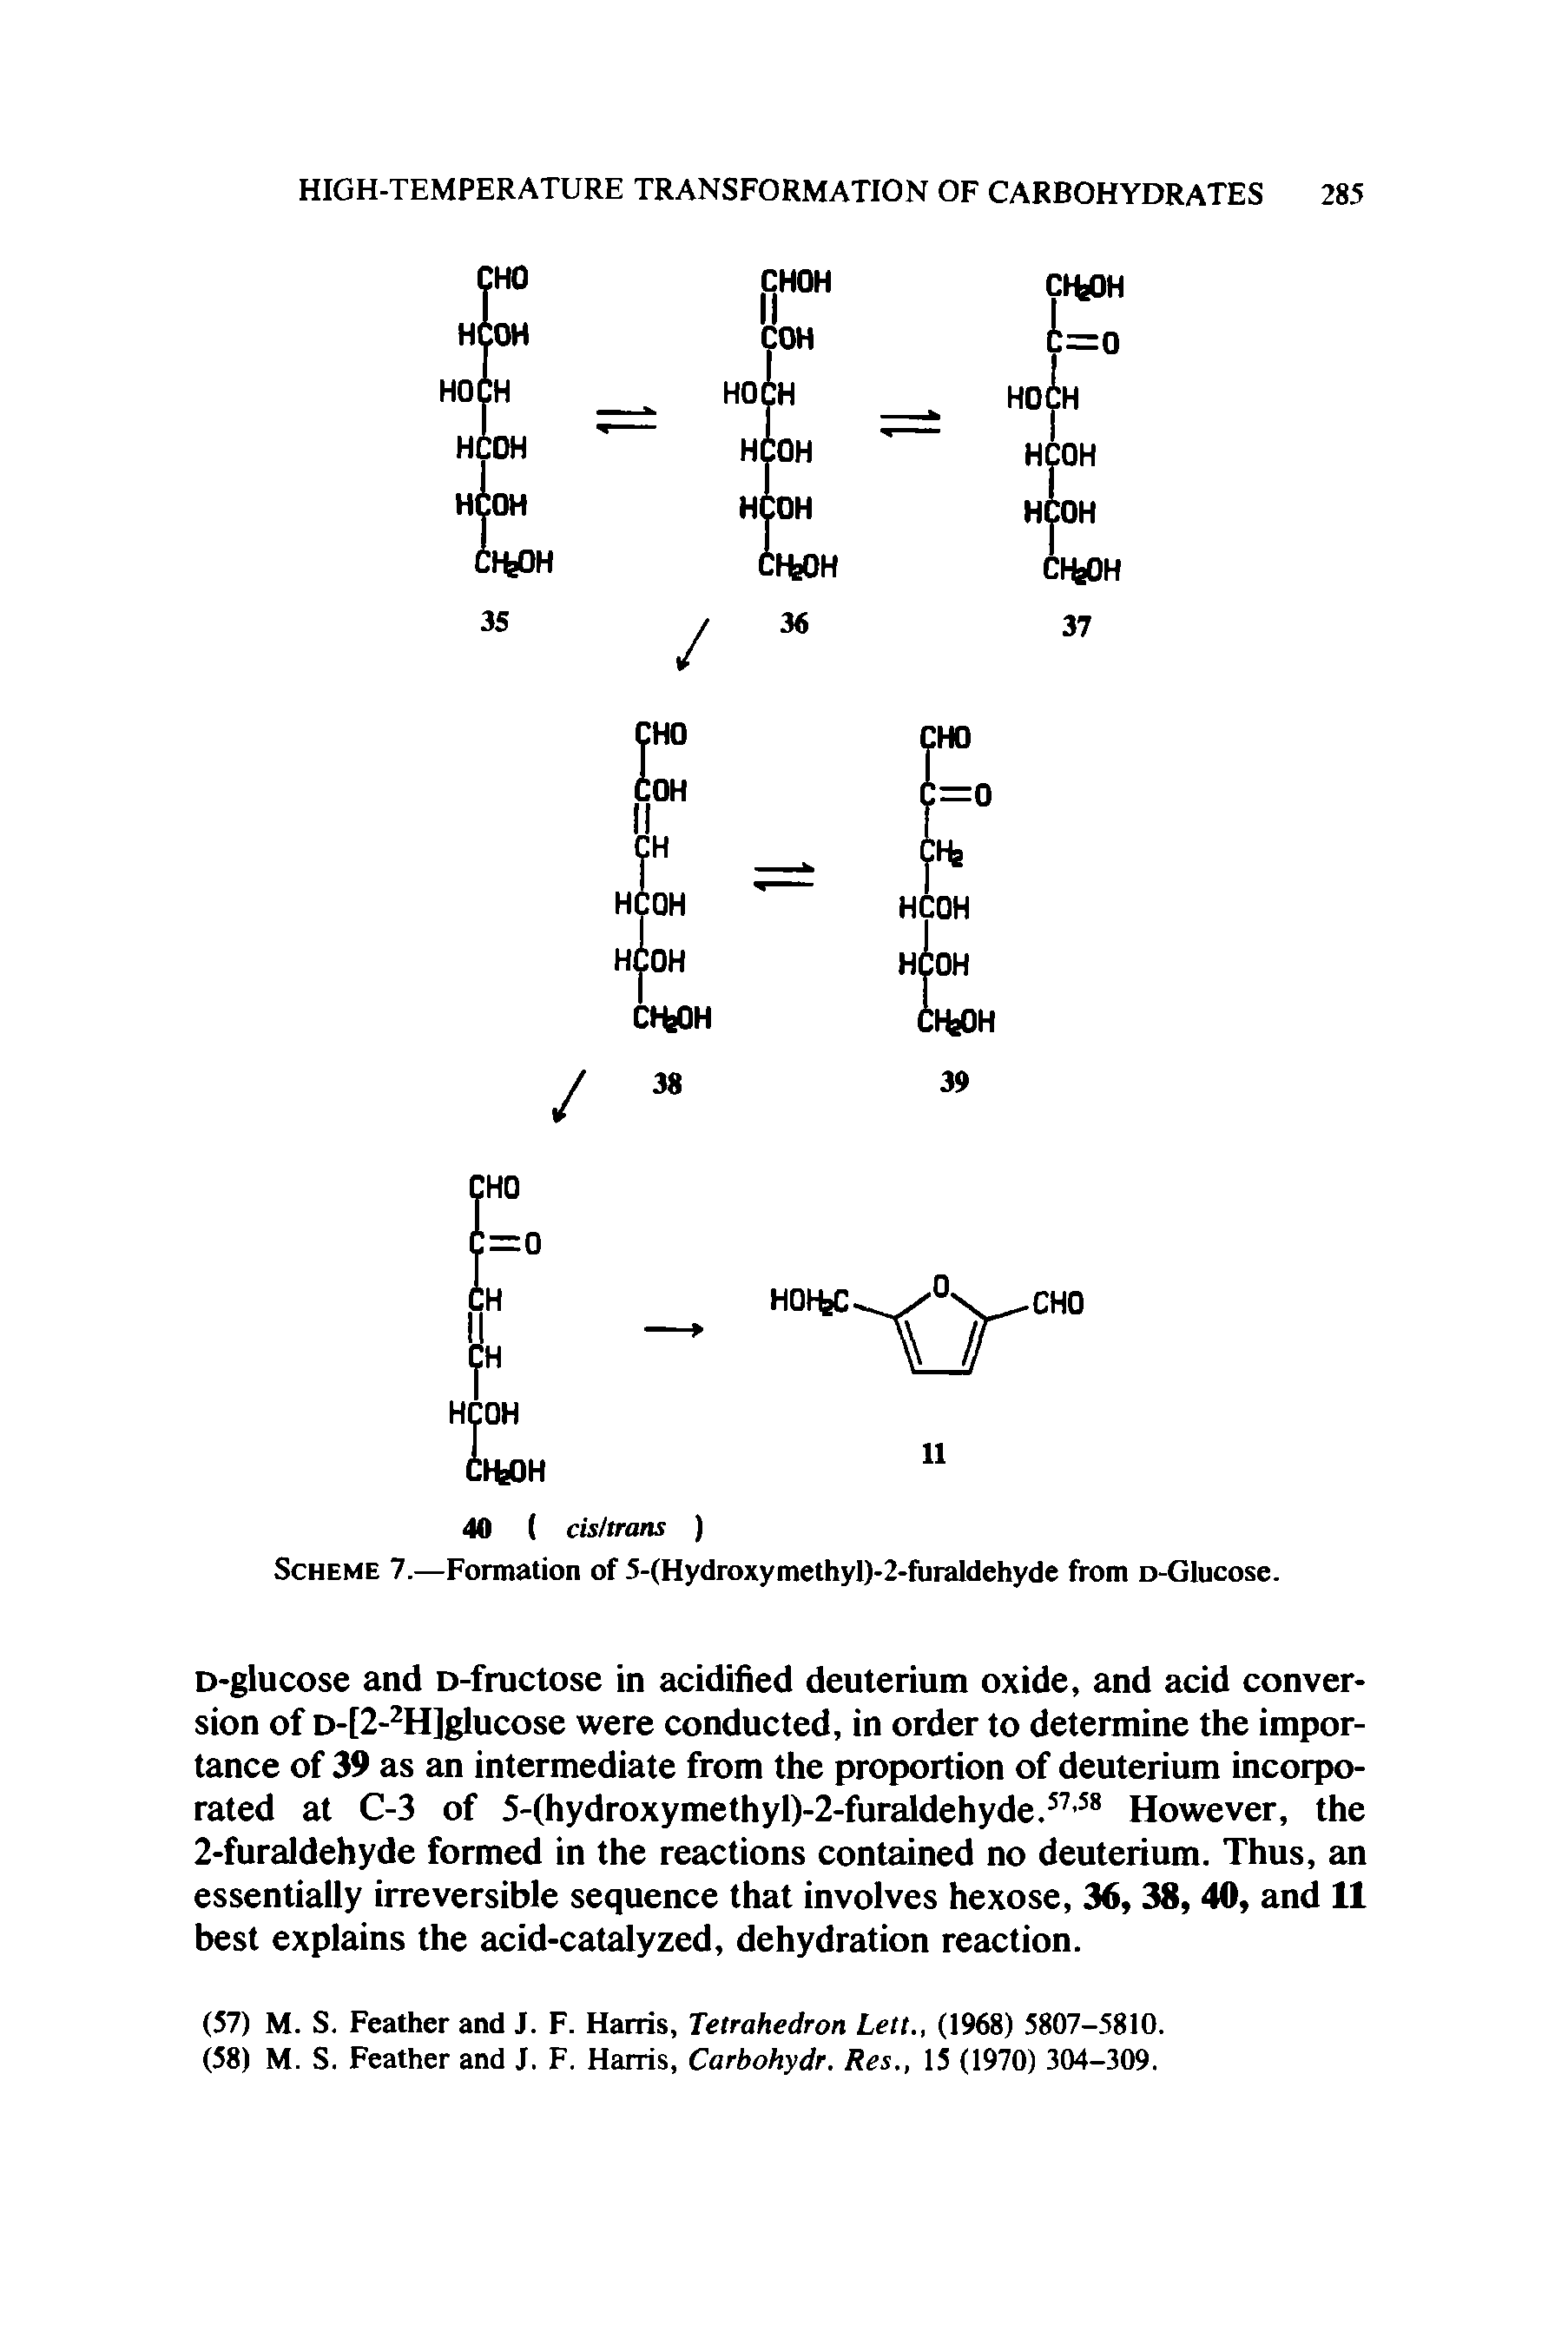 Scheme 7.—Formation of 5-(Hydroxymethyl)-2-furaldehyde from o-Glucose.